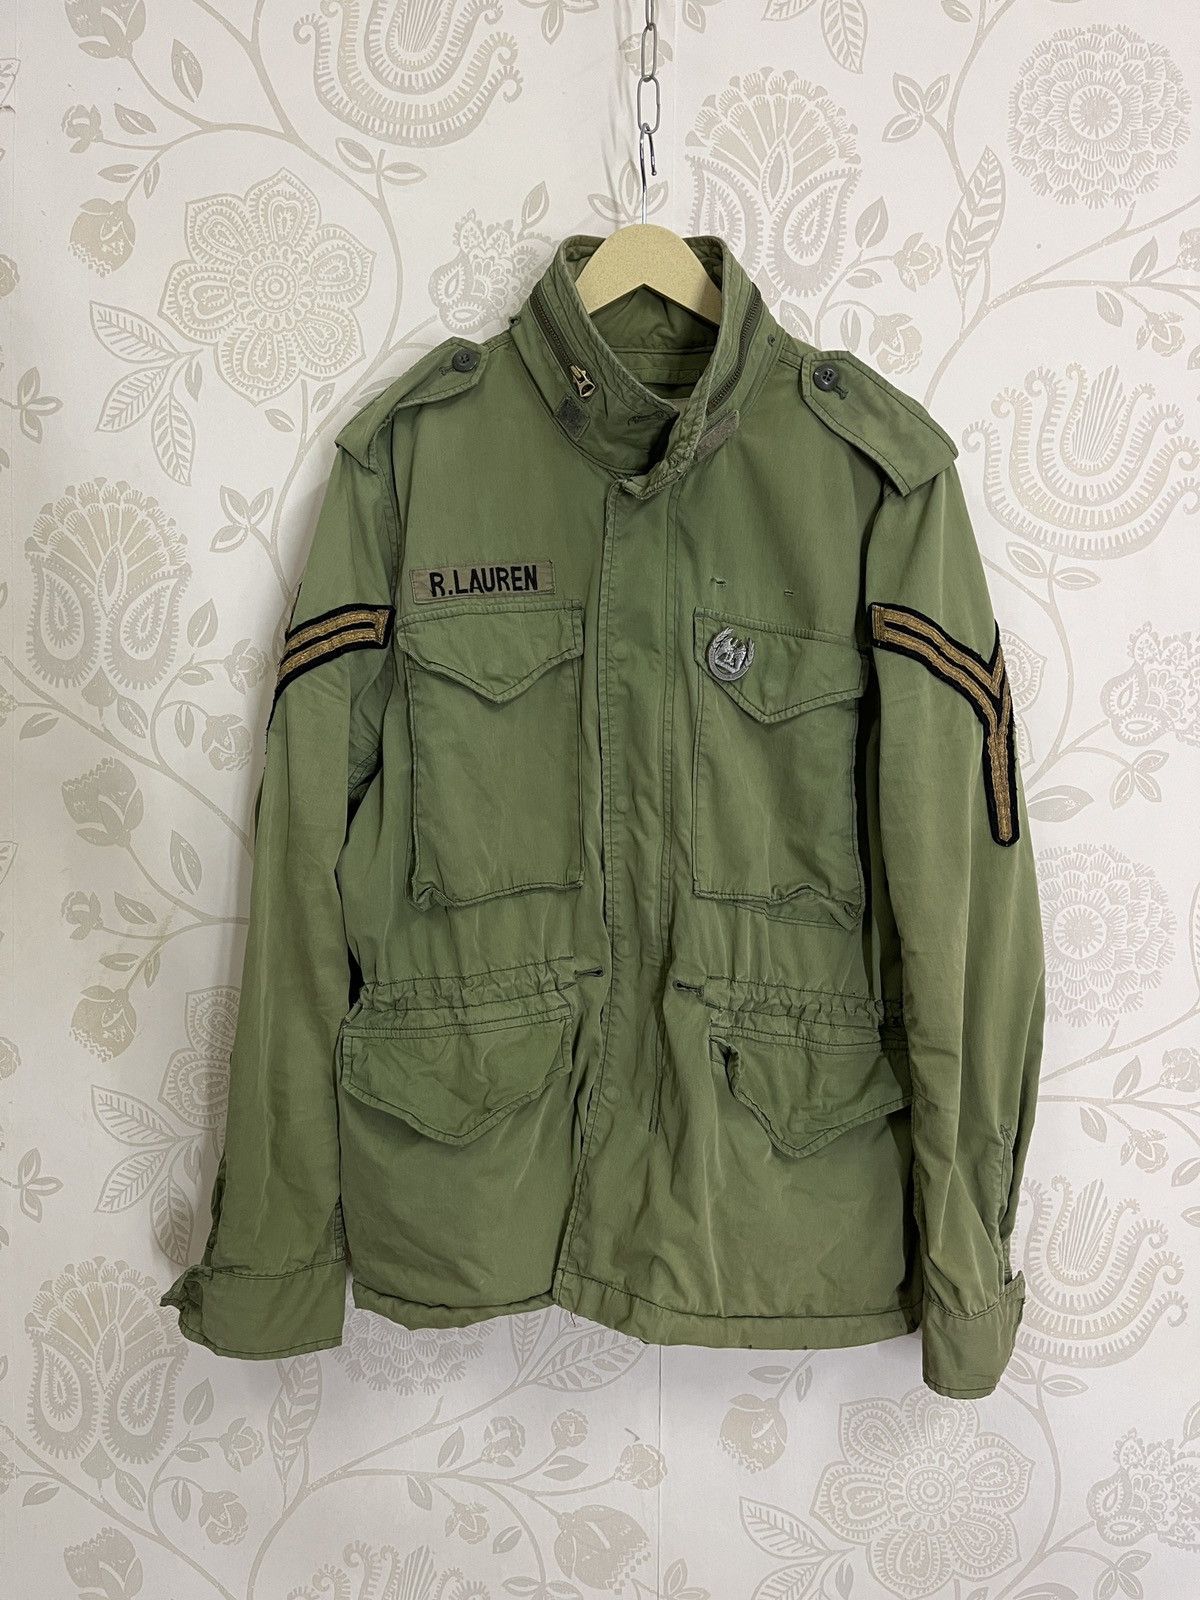 Vintage - Grails Ralph Lauren Denim & Supply Army Jacket - 2